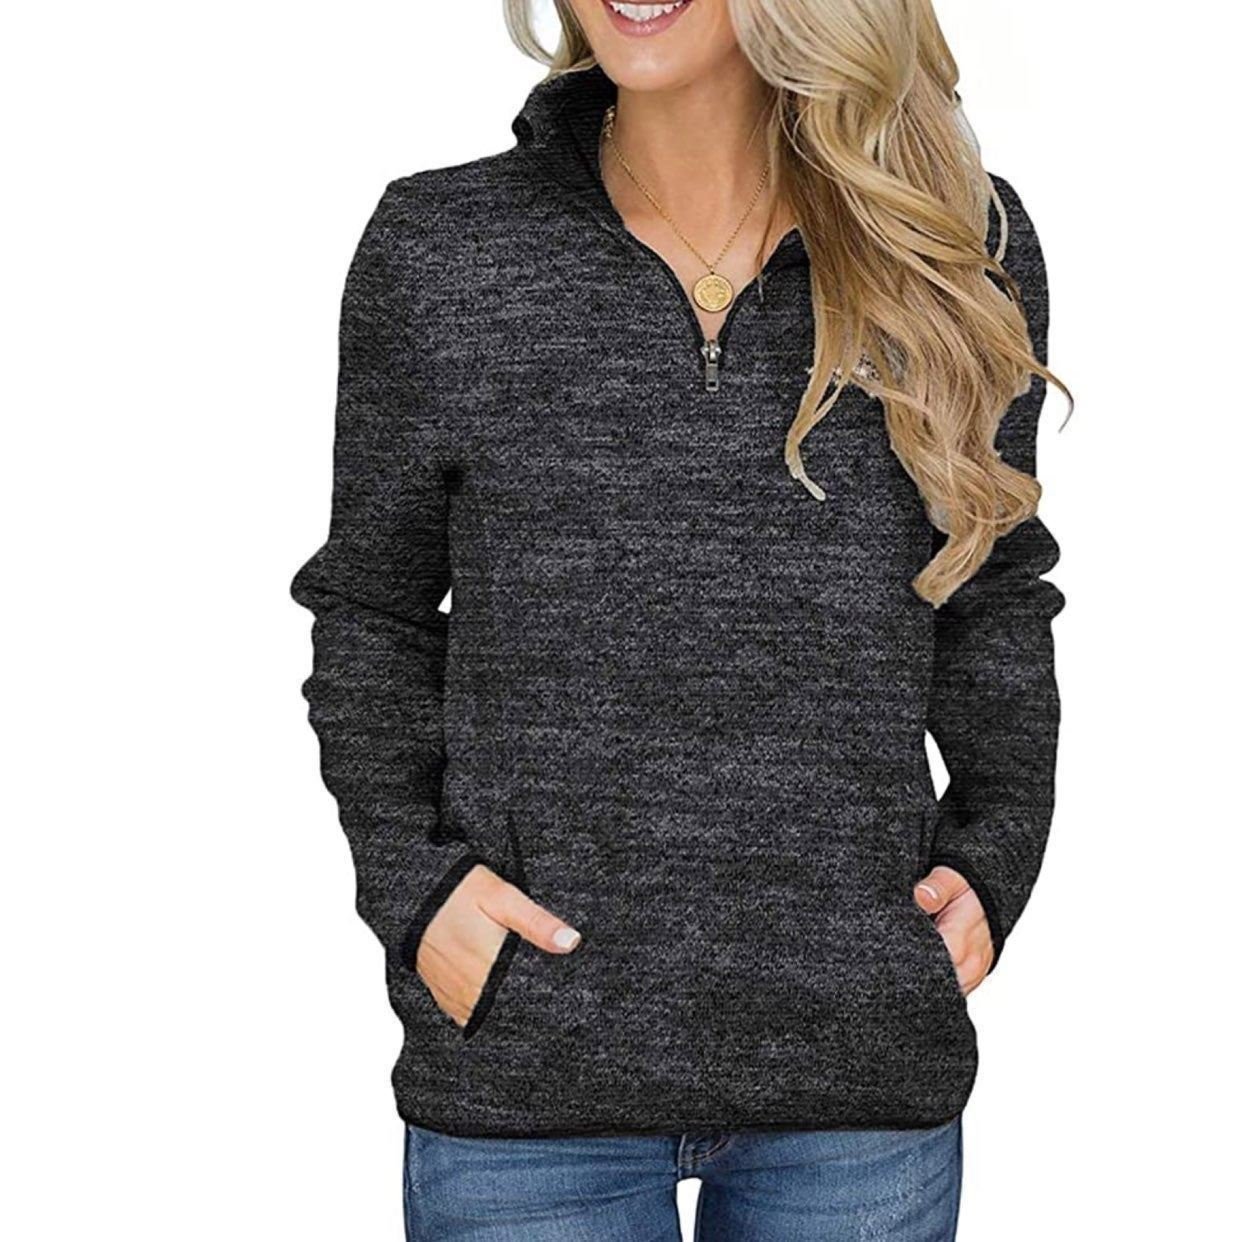 Buy Large gray long sleeve top sweatshirt poAVHgykF hot sale